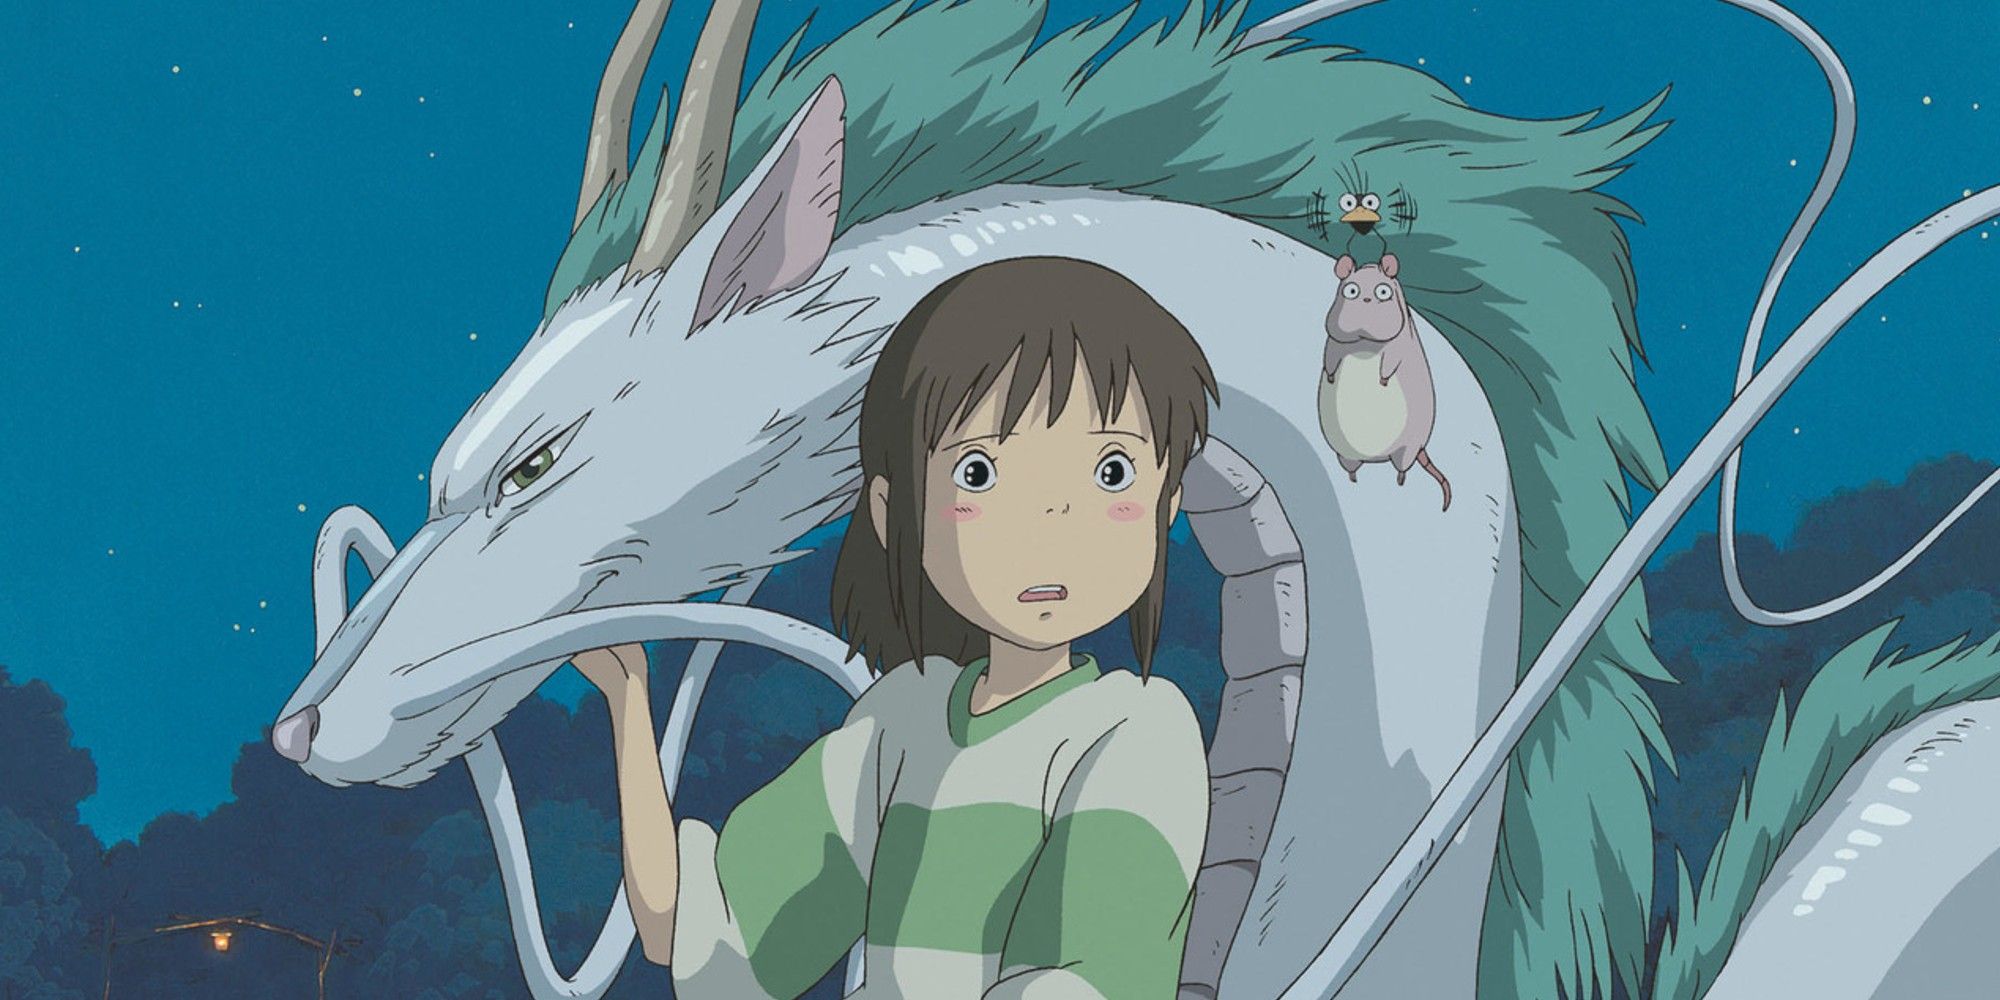 Chihiro in 'Spirited Away' with Haku